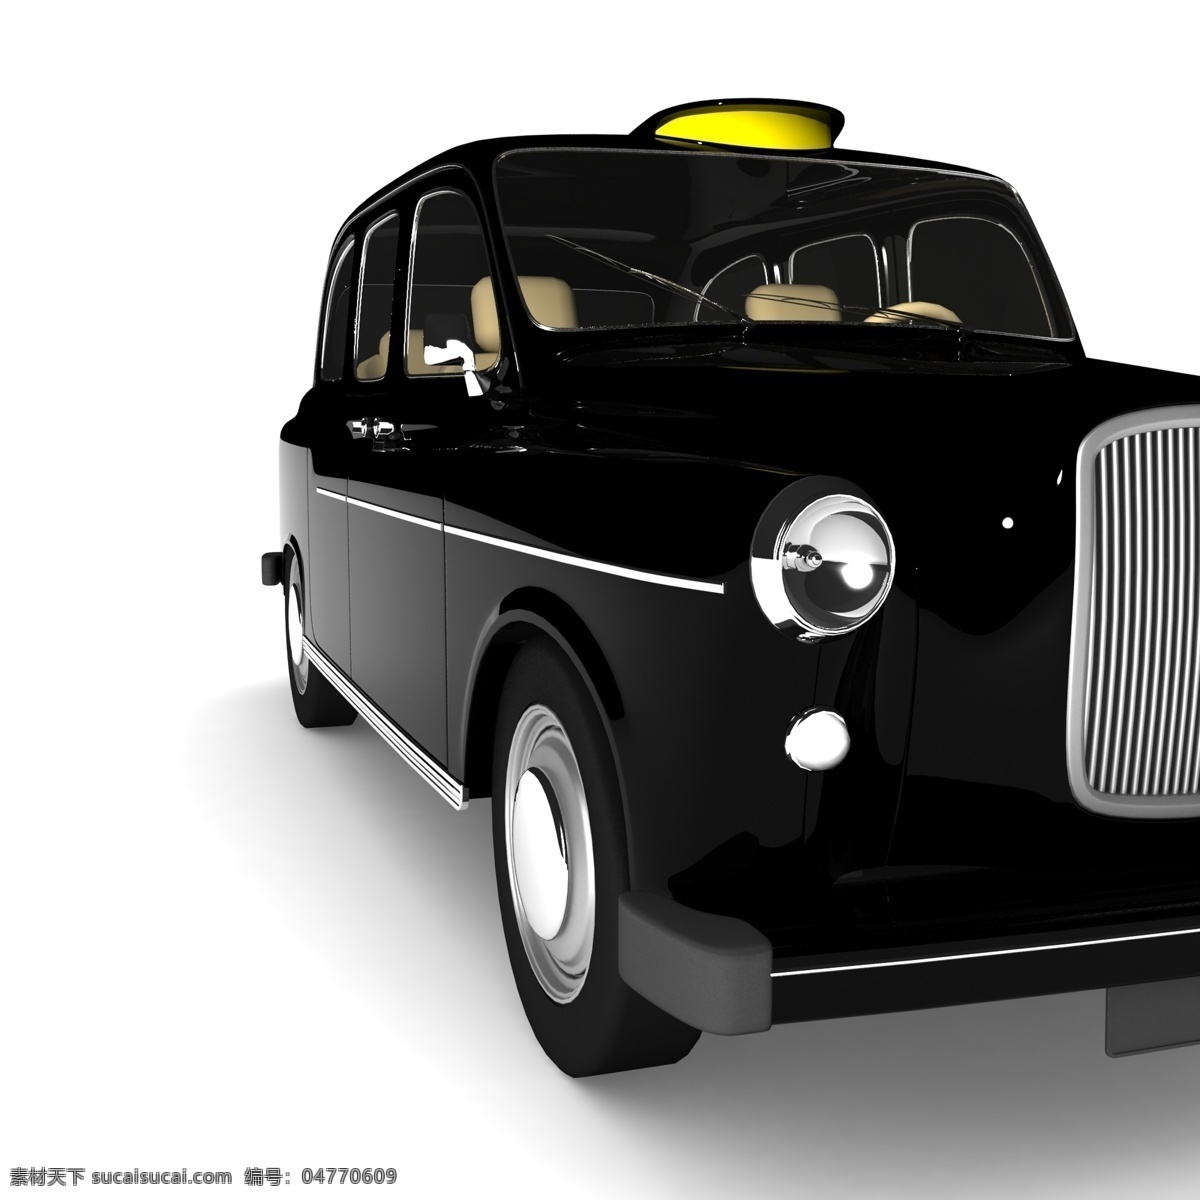 黑色 出租车 黑色汽车 汽车 交通工具 汽车图片 现代科技